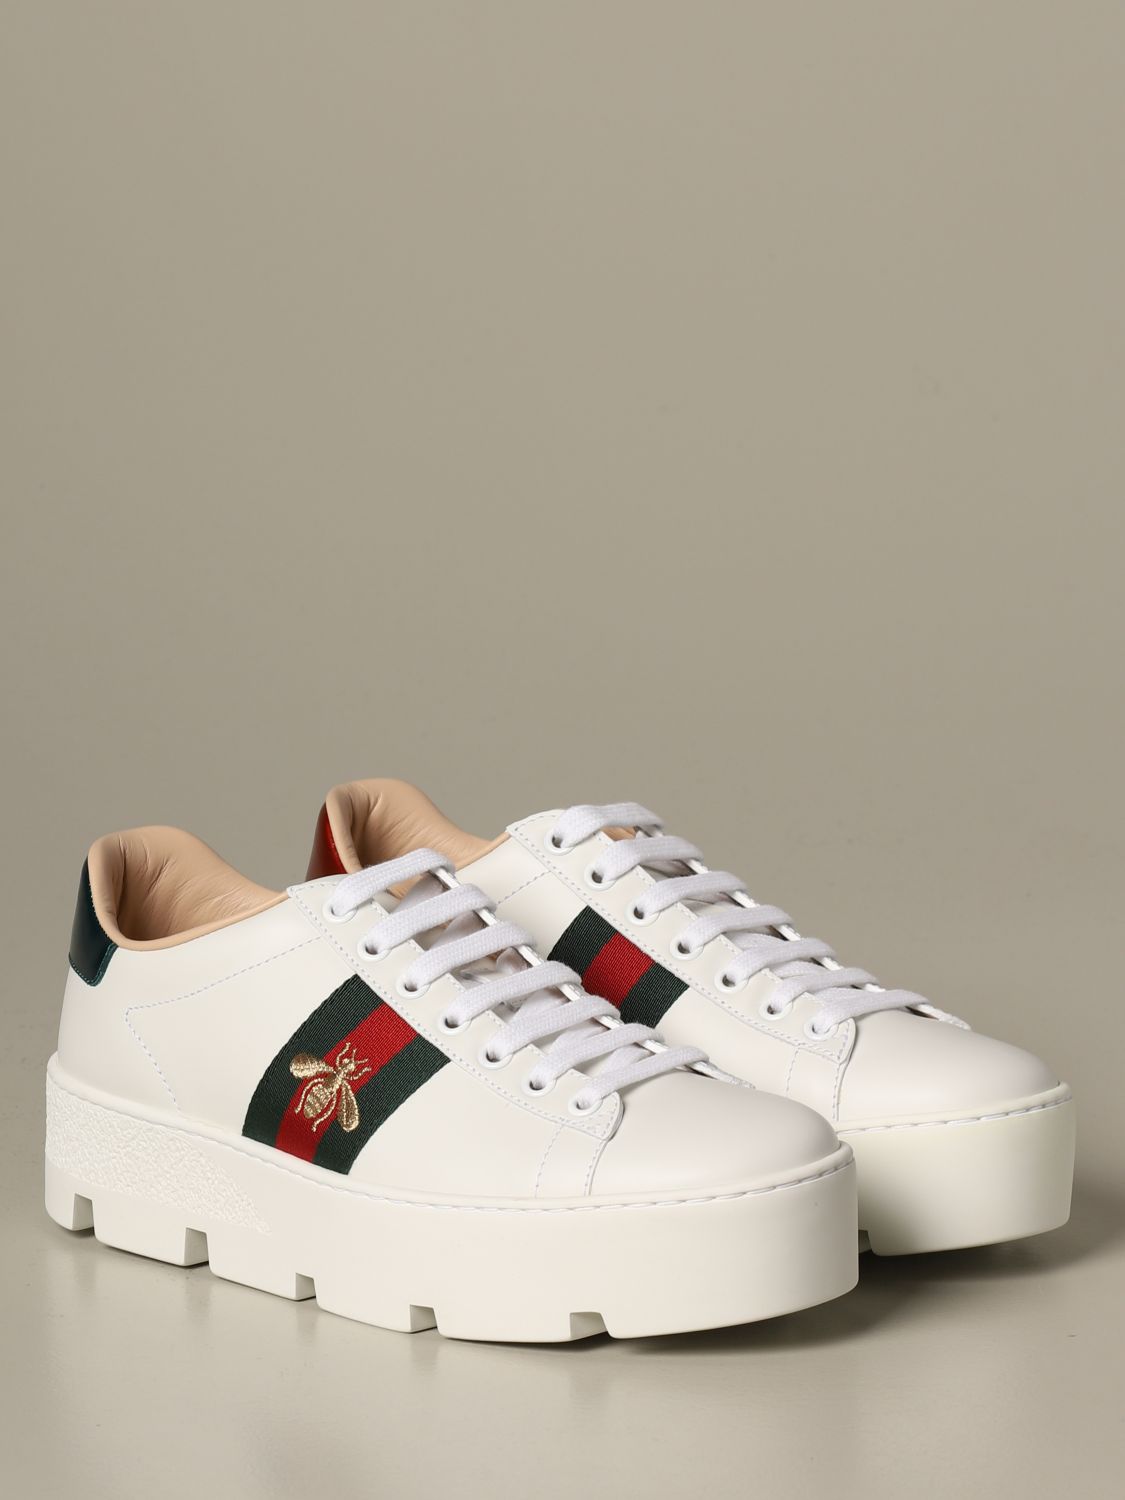 Shoes women Gucci | Sneakers Gucci Women White | Sneakers Gucci 577573